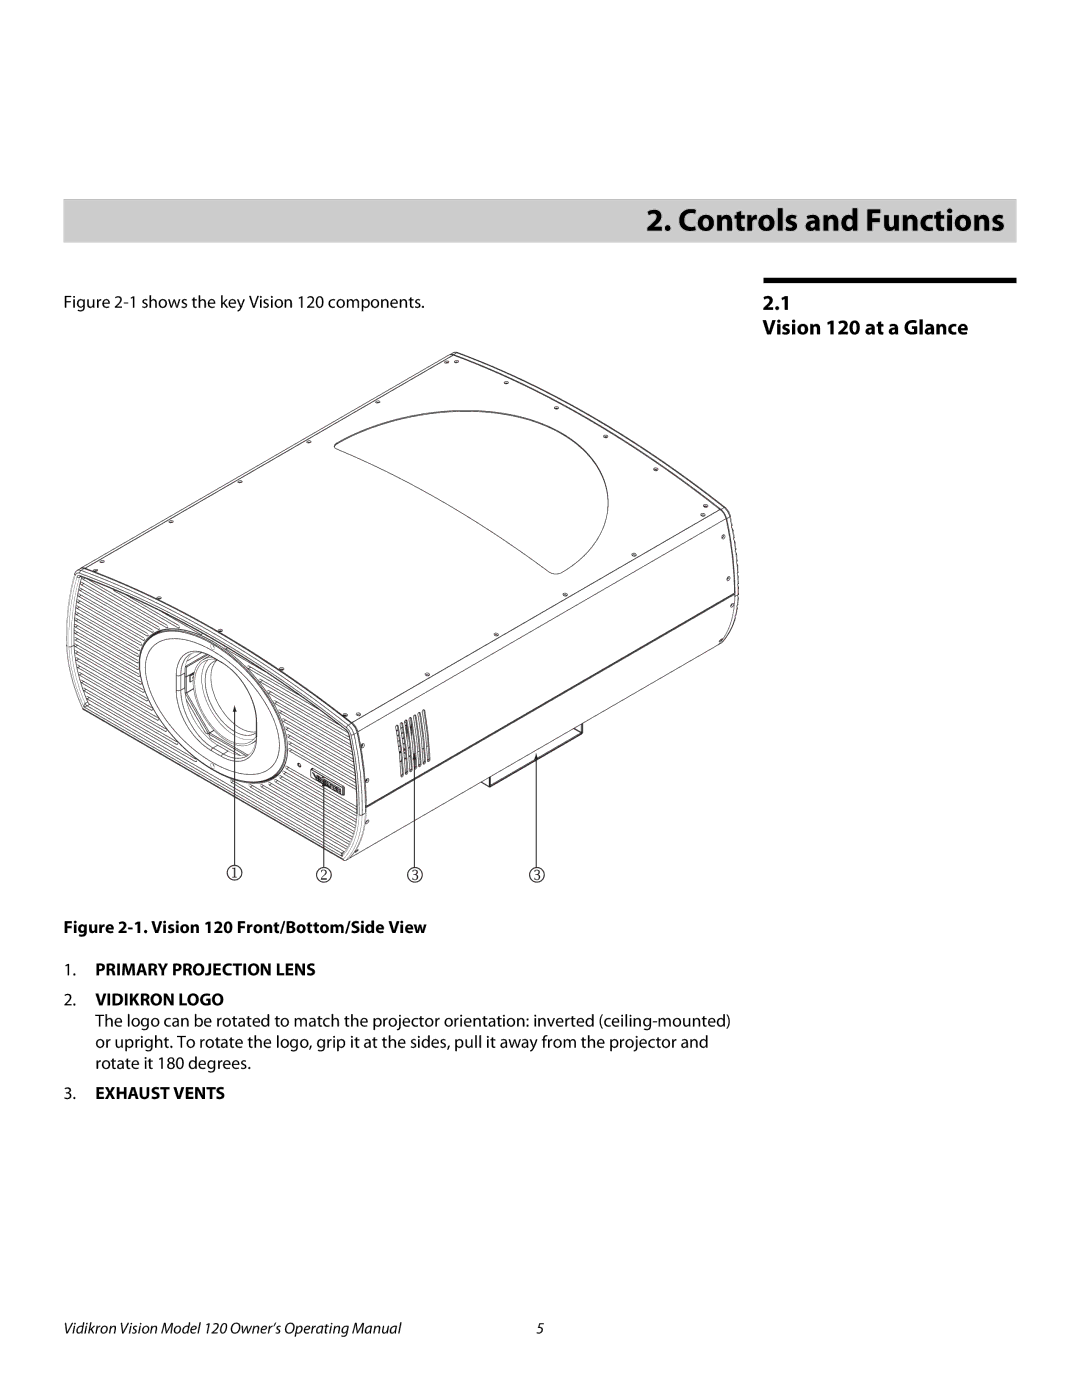 Vidikron v120 manual Controls and Functions, Vision 120 at a Glance 